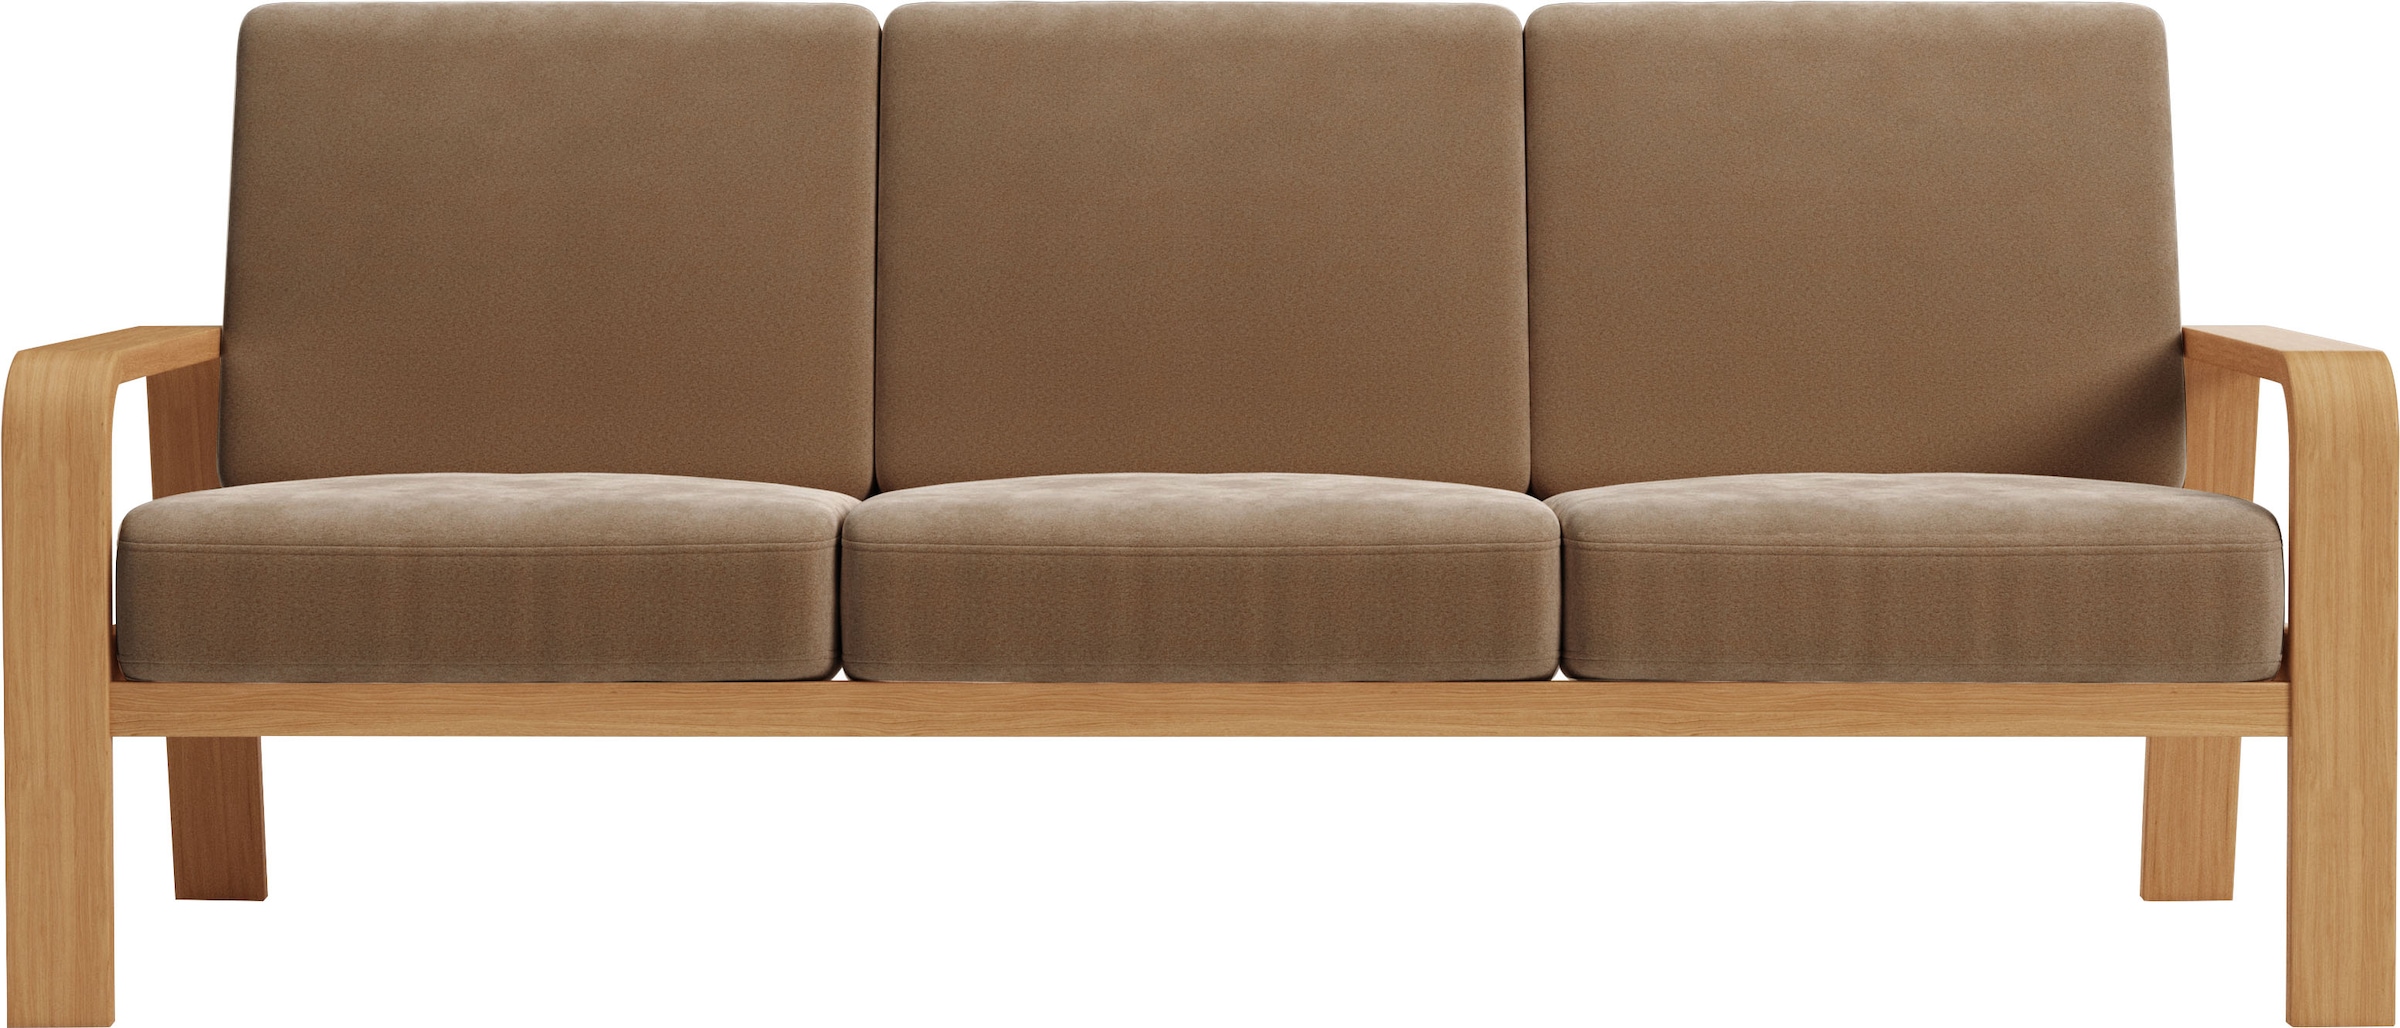 sit&more 3-Sitzer »Kolding«, Armlehnen aus eichefarbigem Buchenholz, verschiedene Bezüge und Farben